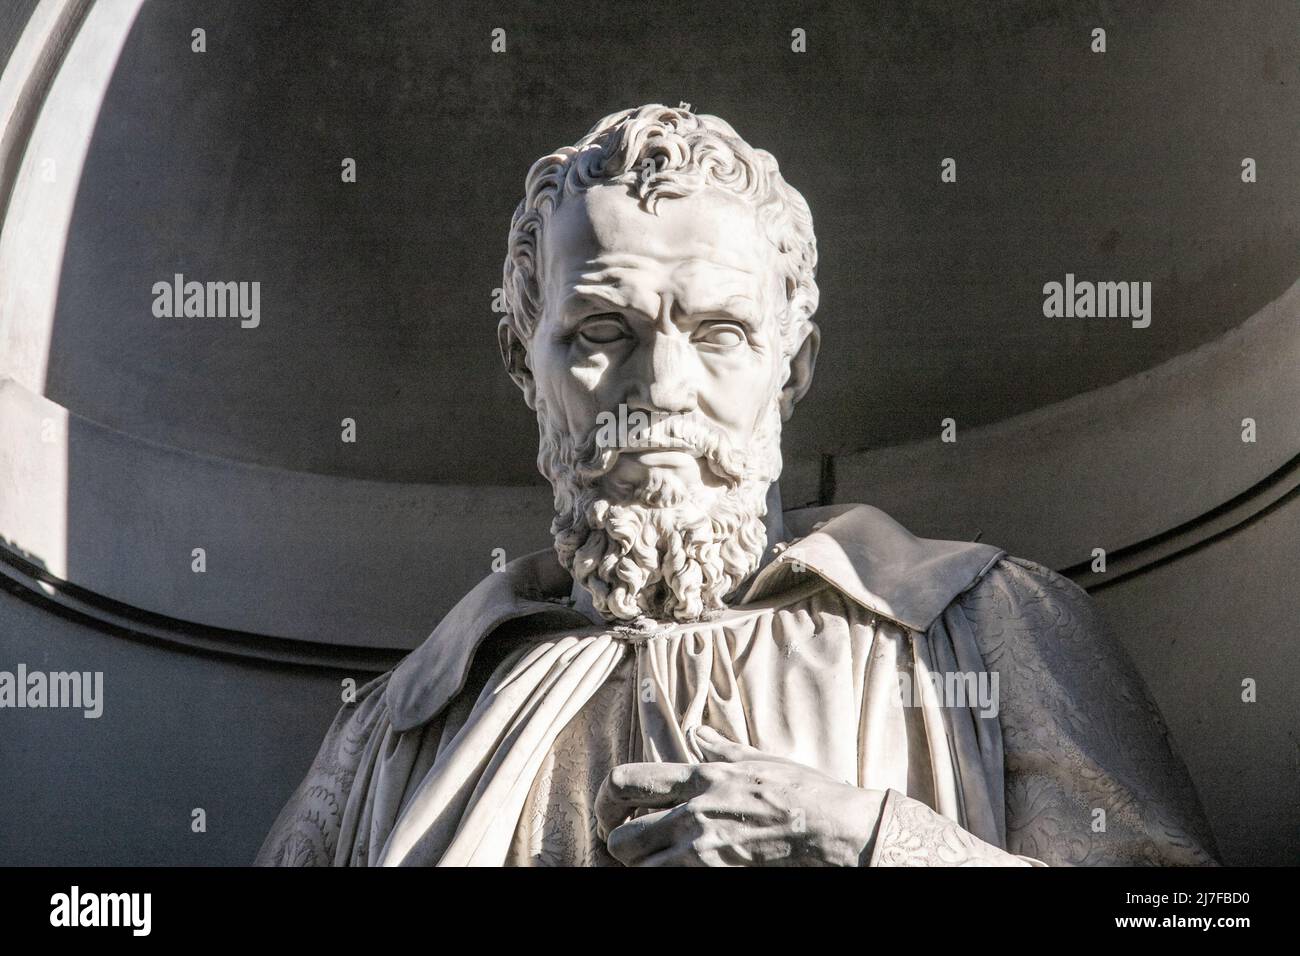 Statua di Michelangelo Buonarroti, Piazzale degli Uffizi, Firenze, Italia Foto Stock